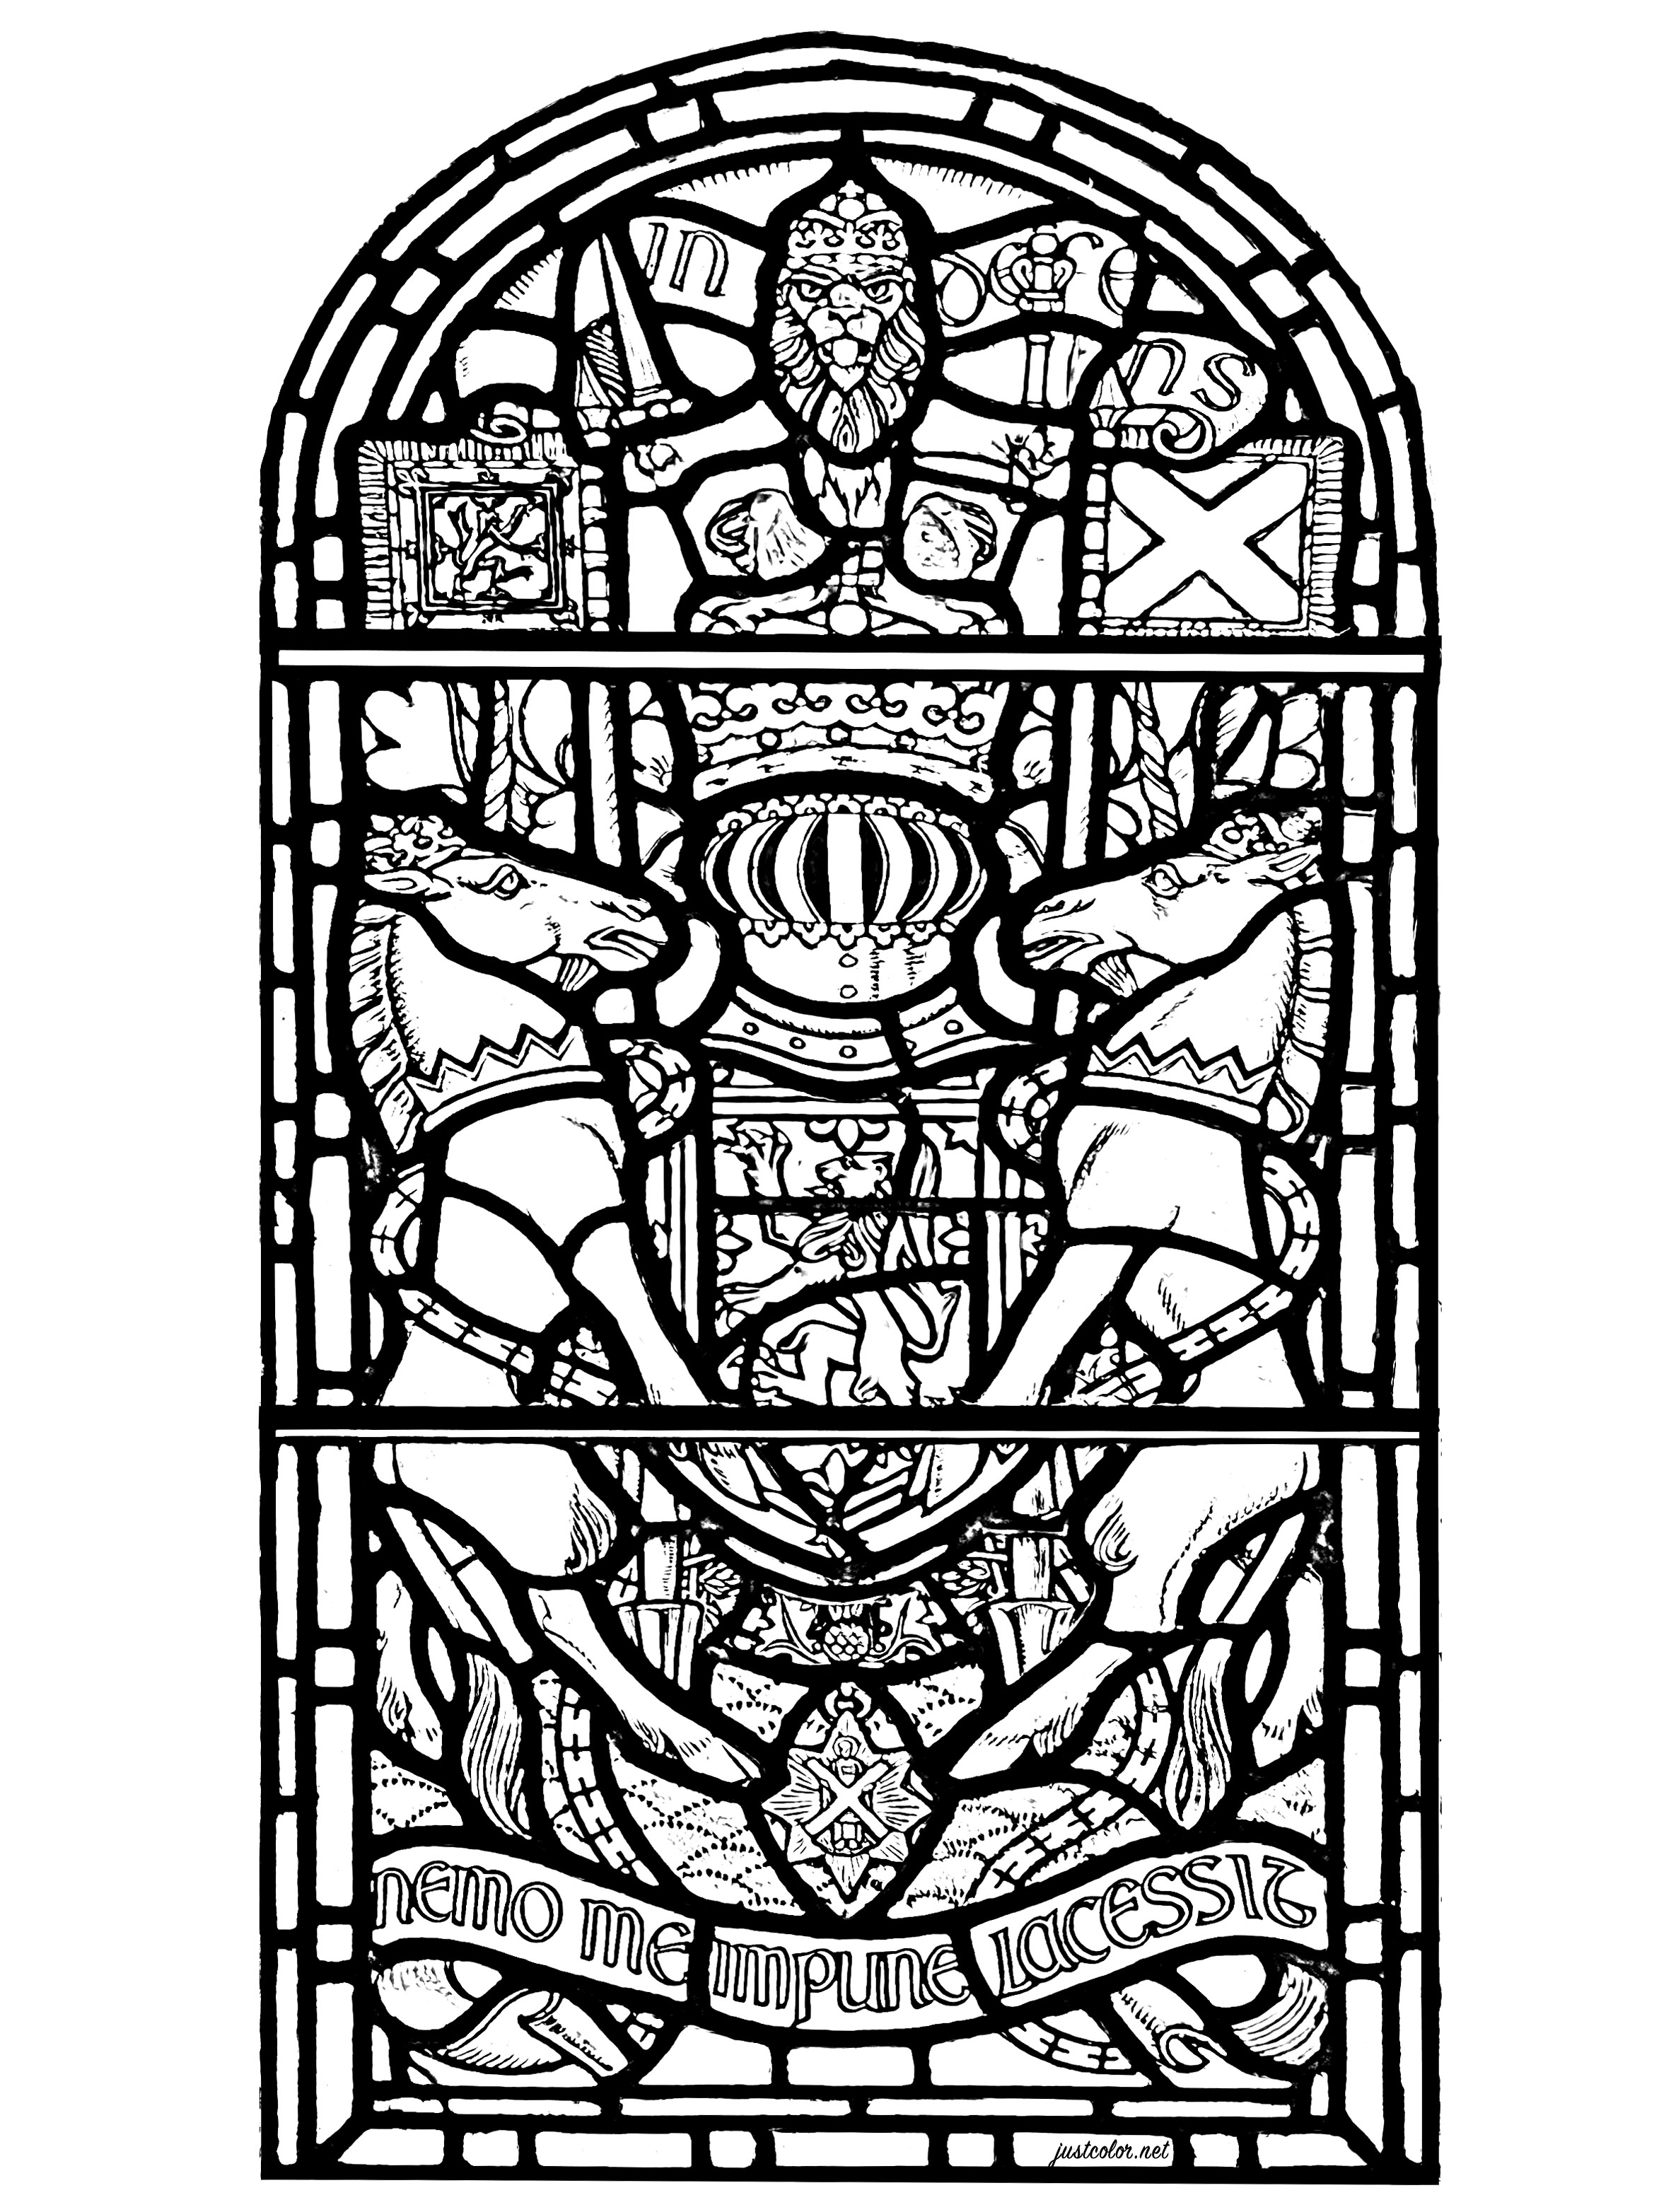 Vidriera del castillo de Edimburgo, Escocia. La vidriera representa diversos símbolos de Escocia, así como el texto 'Nemo me impune lacessit', que es el lema en latín de la Orden del Cardo.Aparece en las armas reales del Reino Unido de Escocia.Significa 'Nadie me ofende impunemente'.